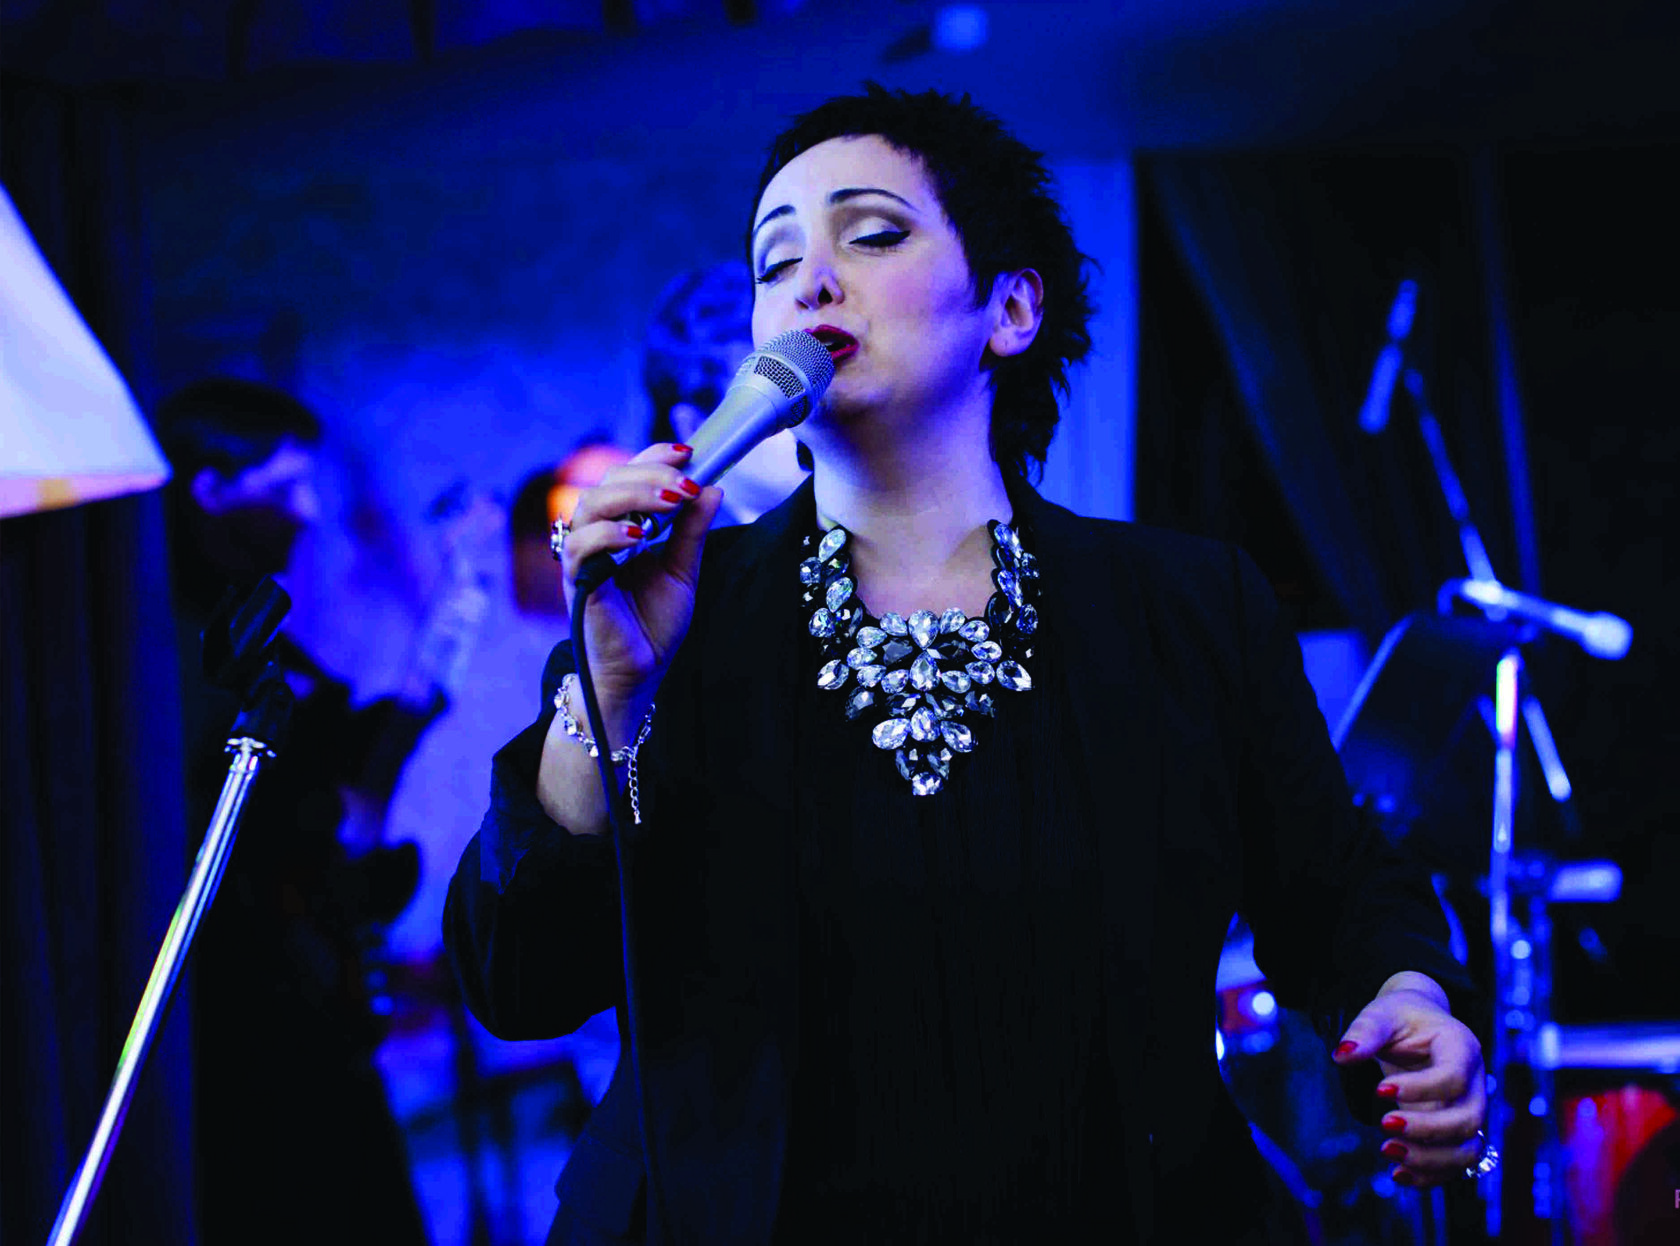 Грузинская джазовая певица этери бериашвили фото